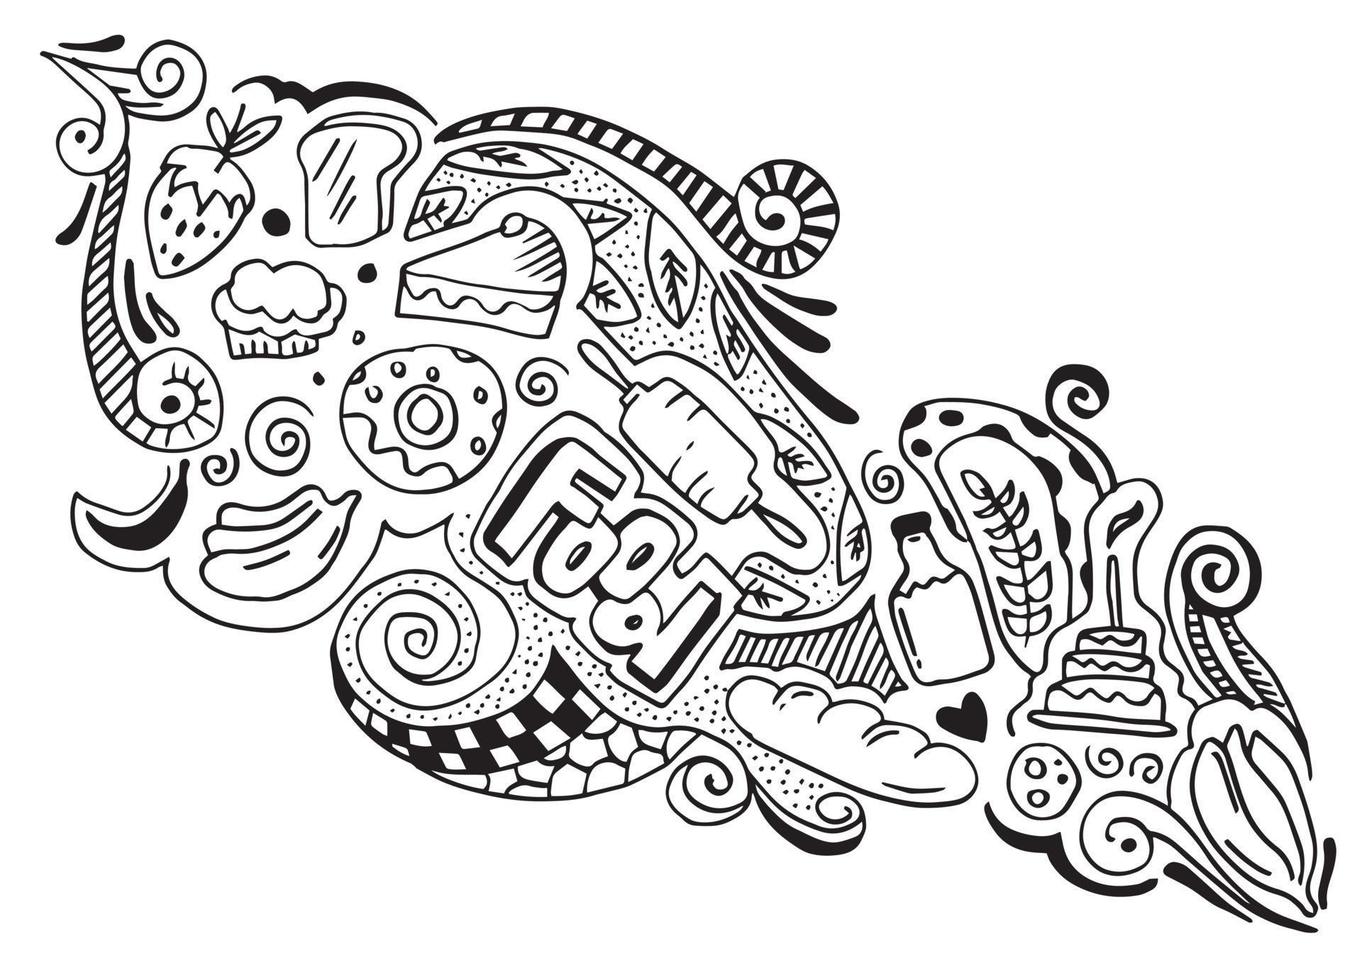 arte criativa do elemento de design de comida na ilustração de doodle style.vector. vetor